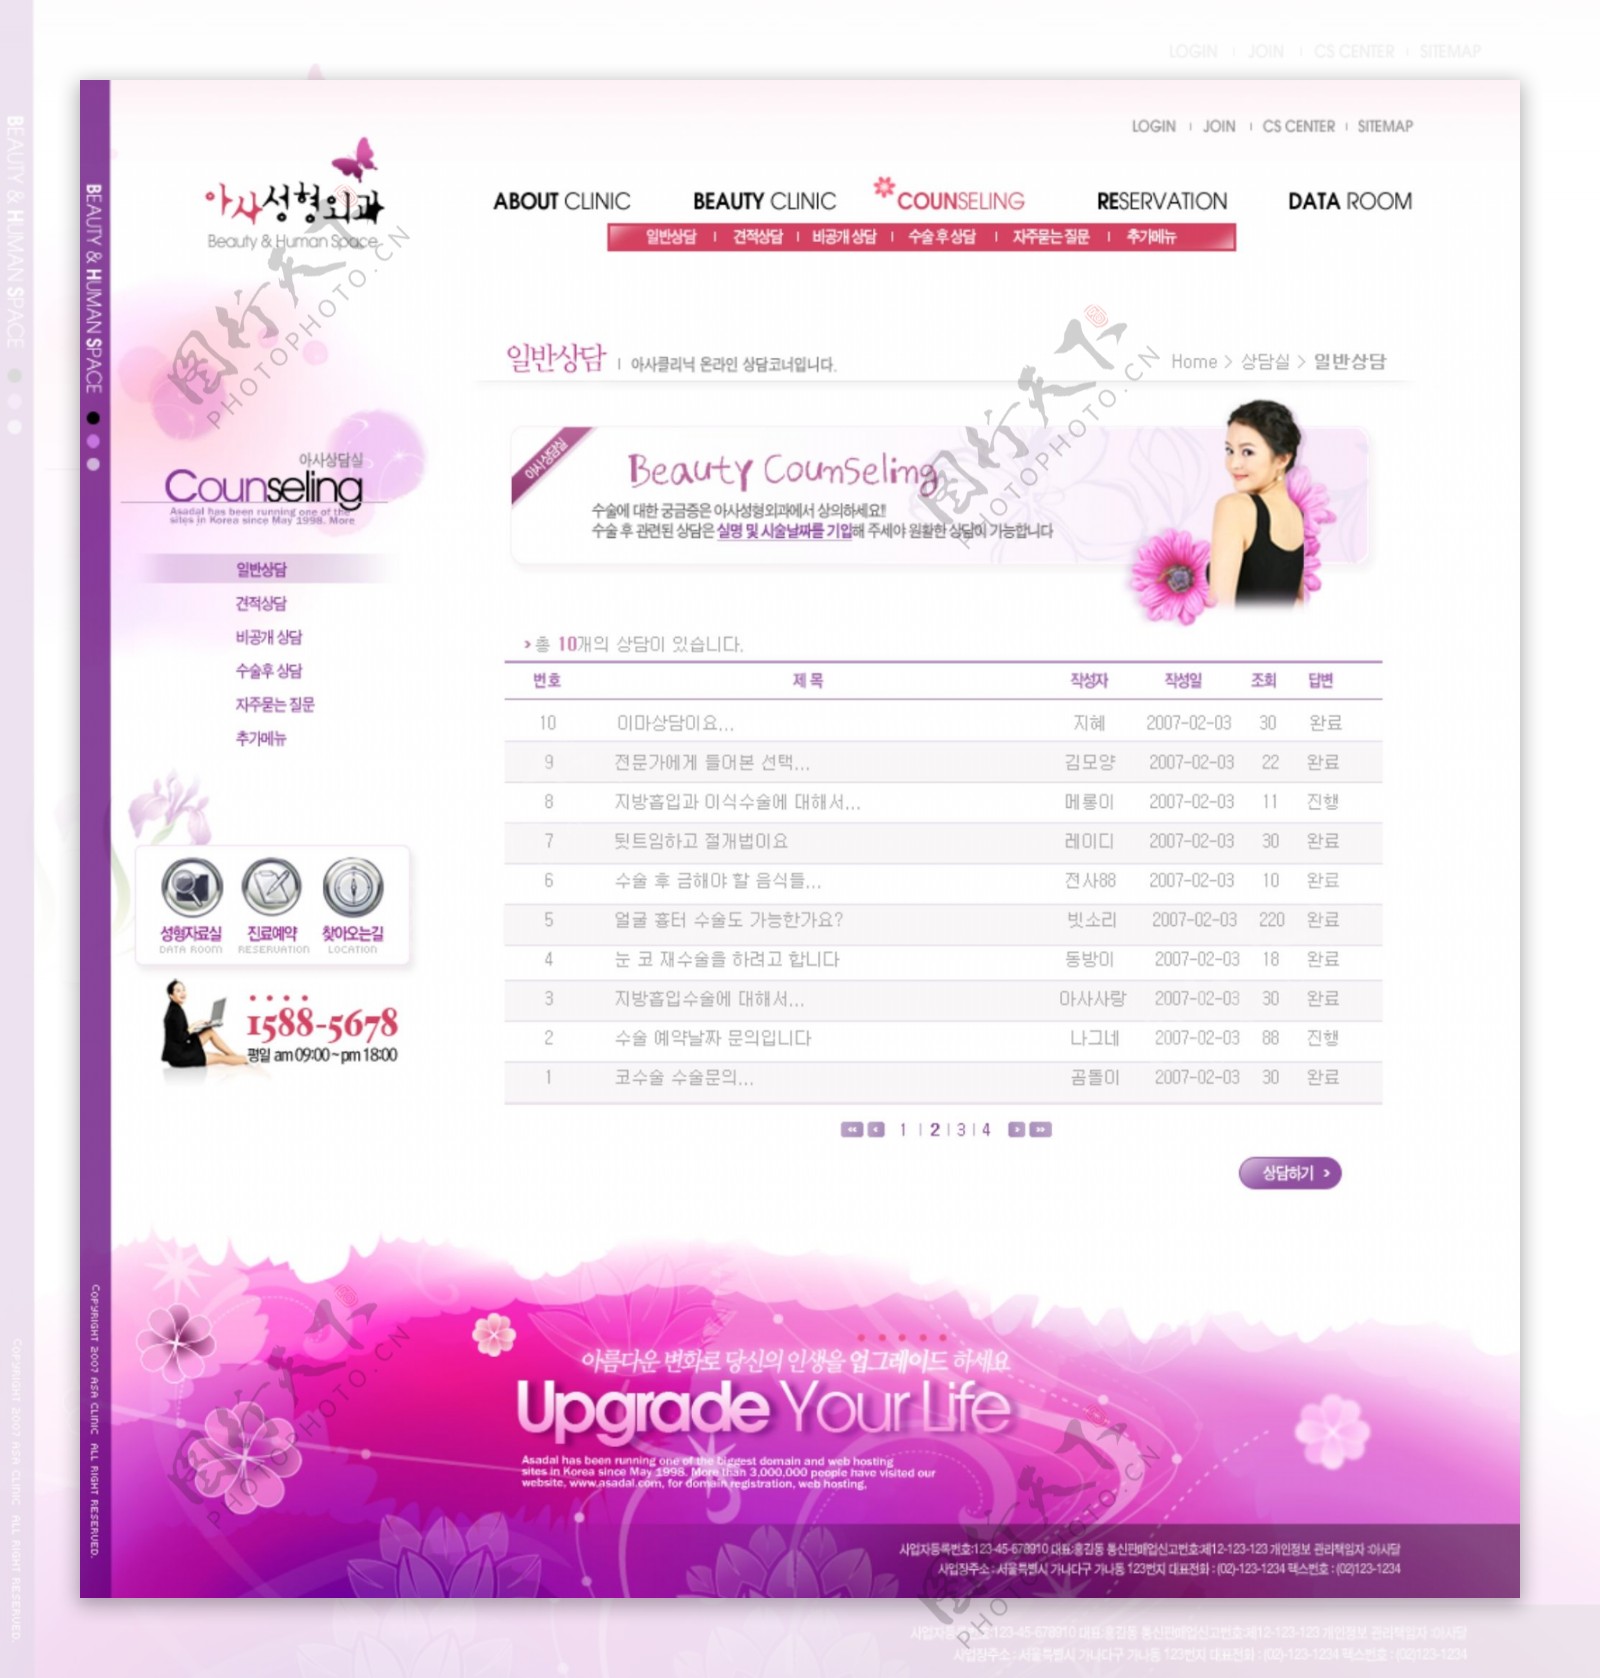 紫色调女性网页设计